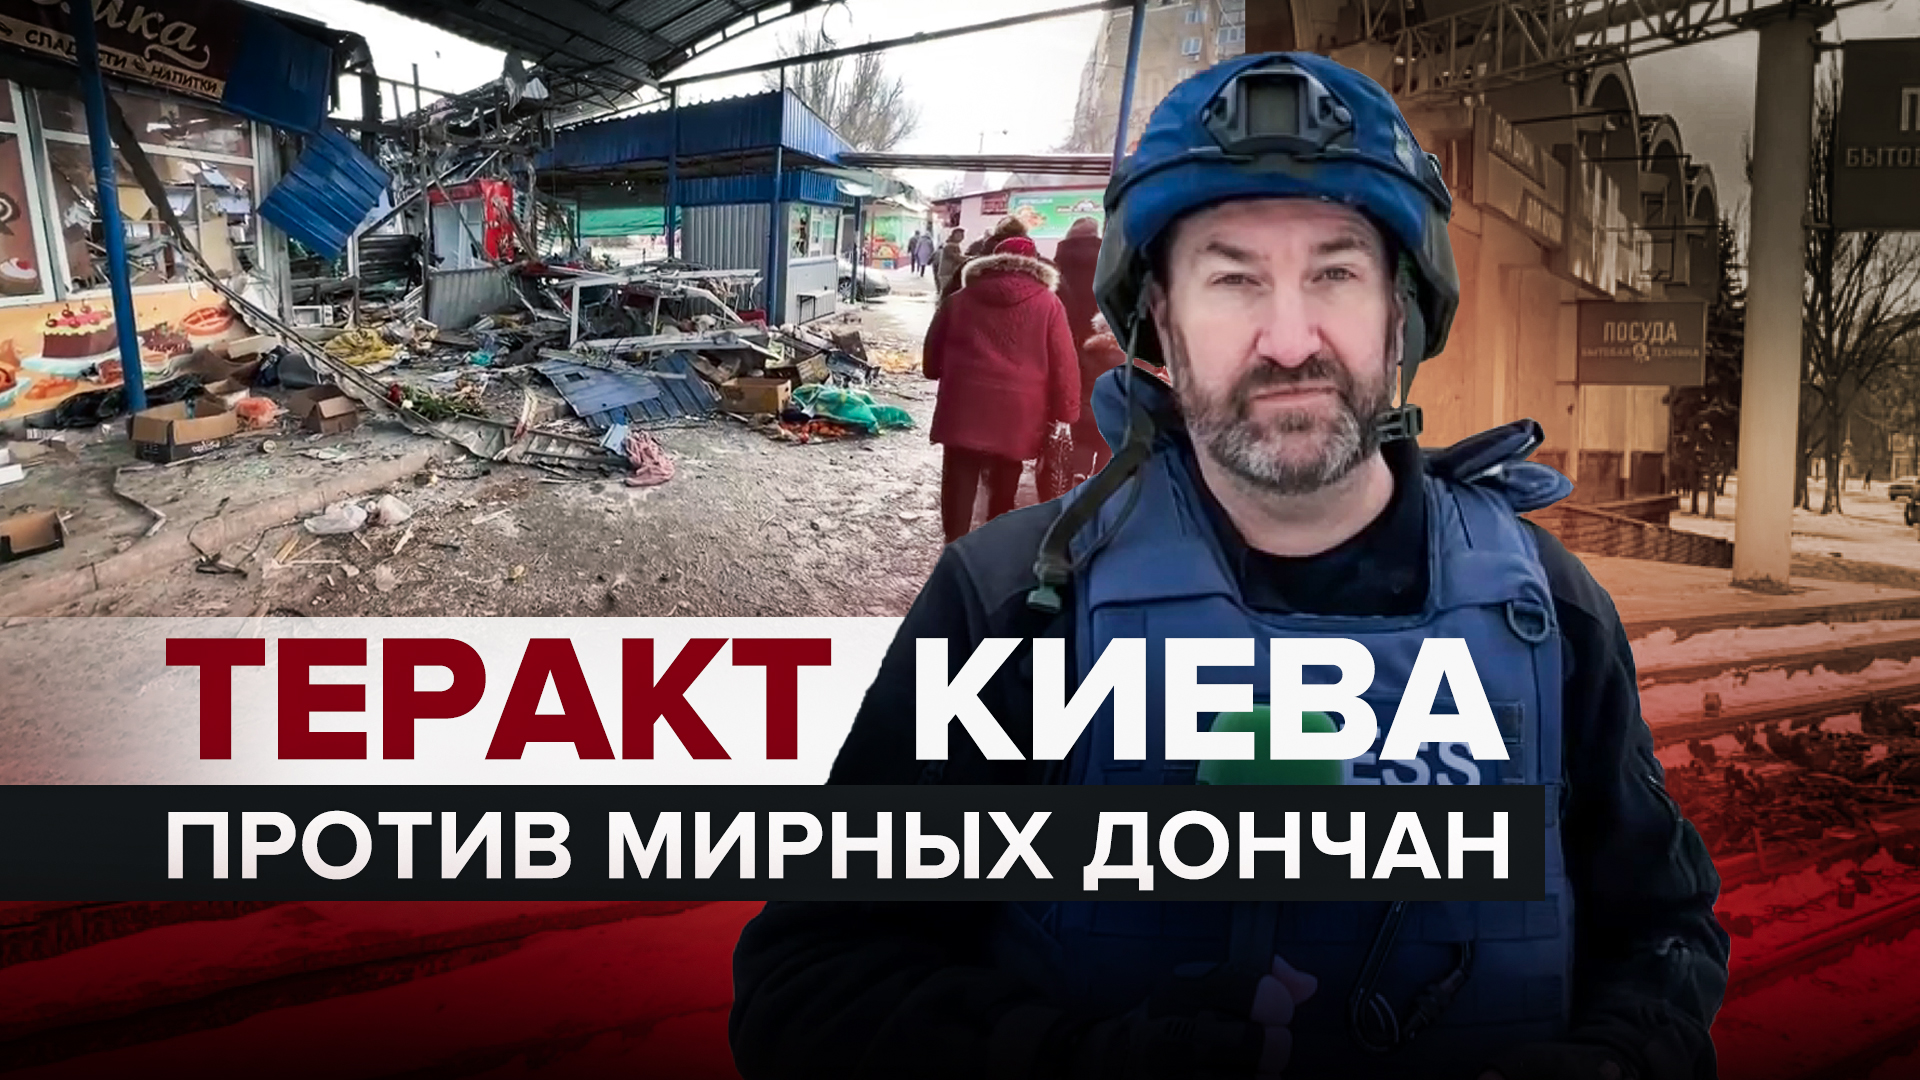 Акт отчаяния: причины и последствия атаки ВСУ на рынок в Донецке